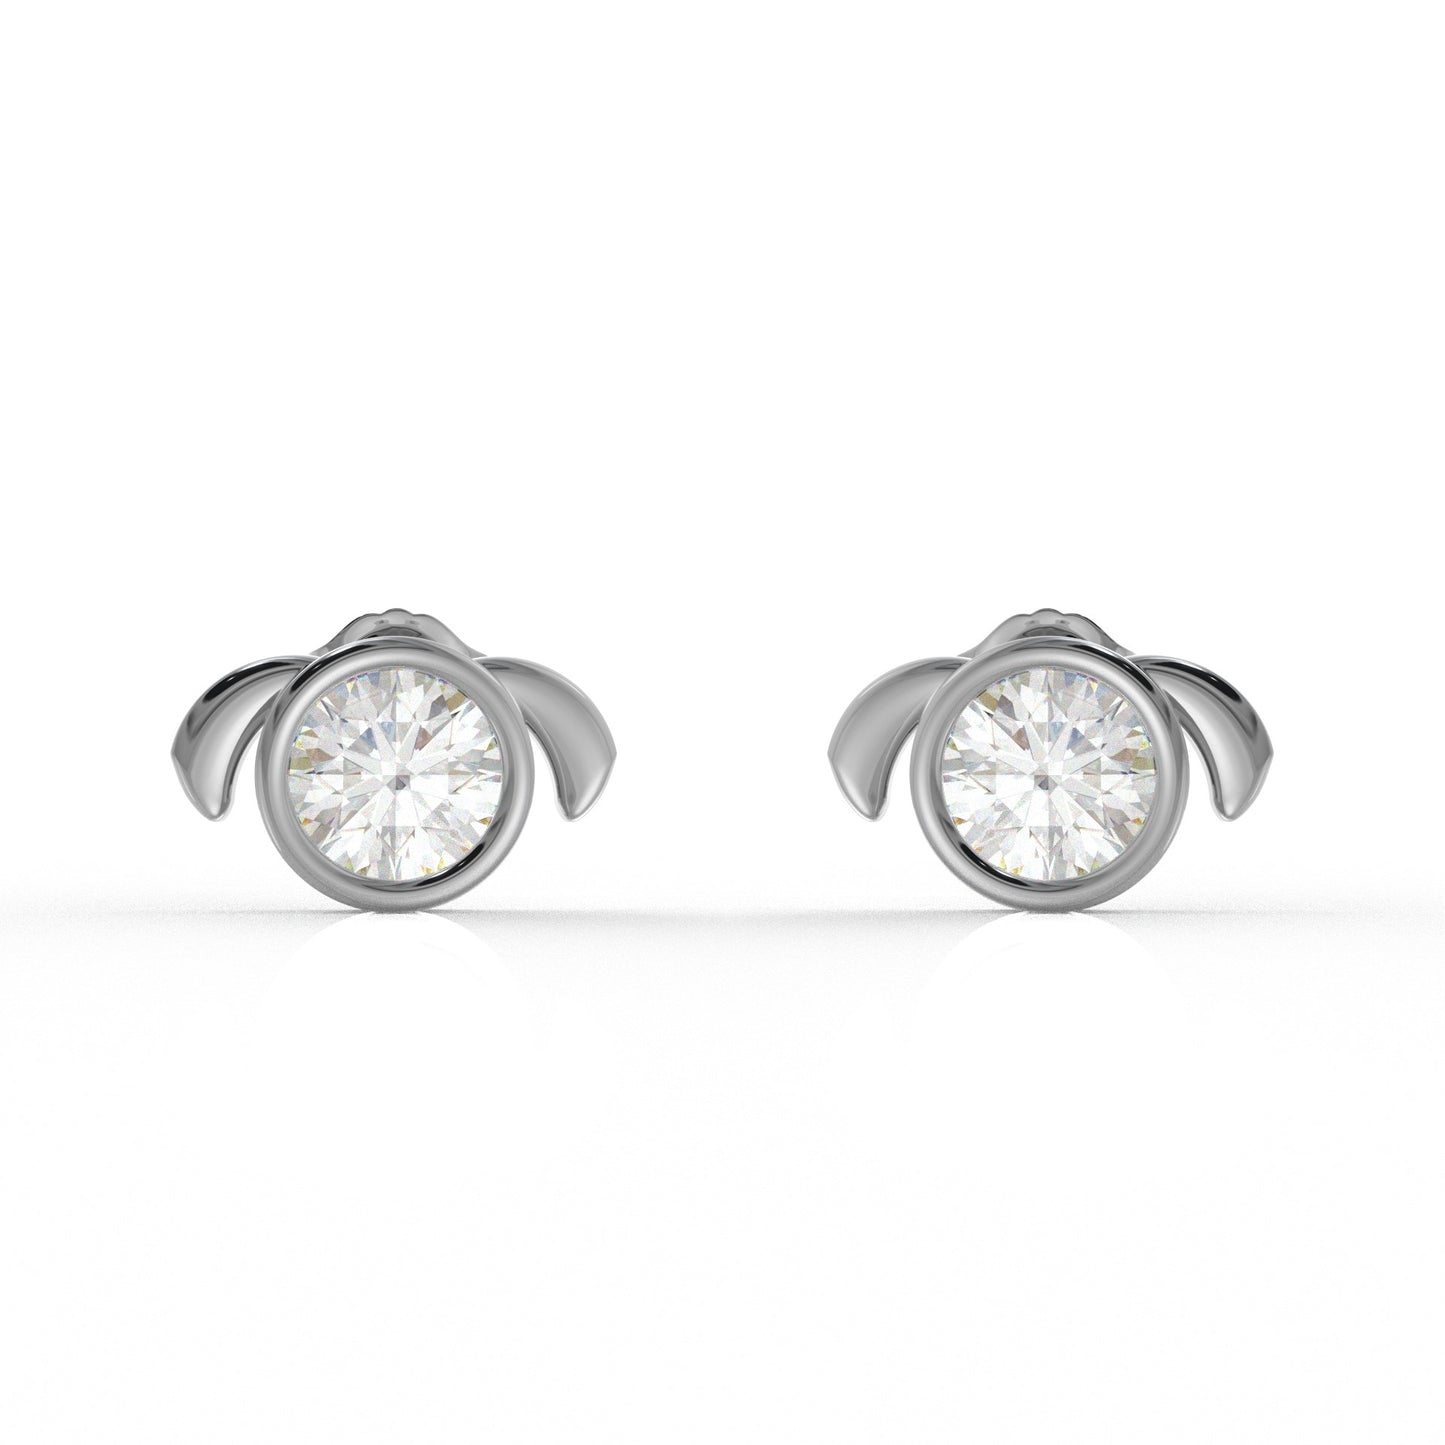 Aurora Moissanite Diamond Ear rings for Kids  1.05 Carat